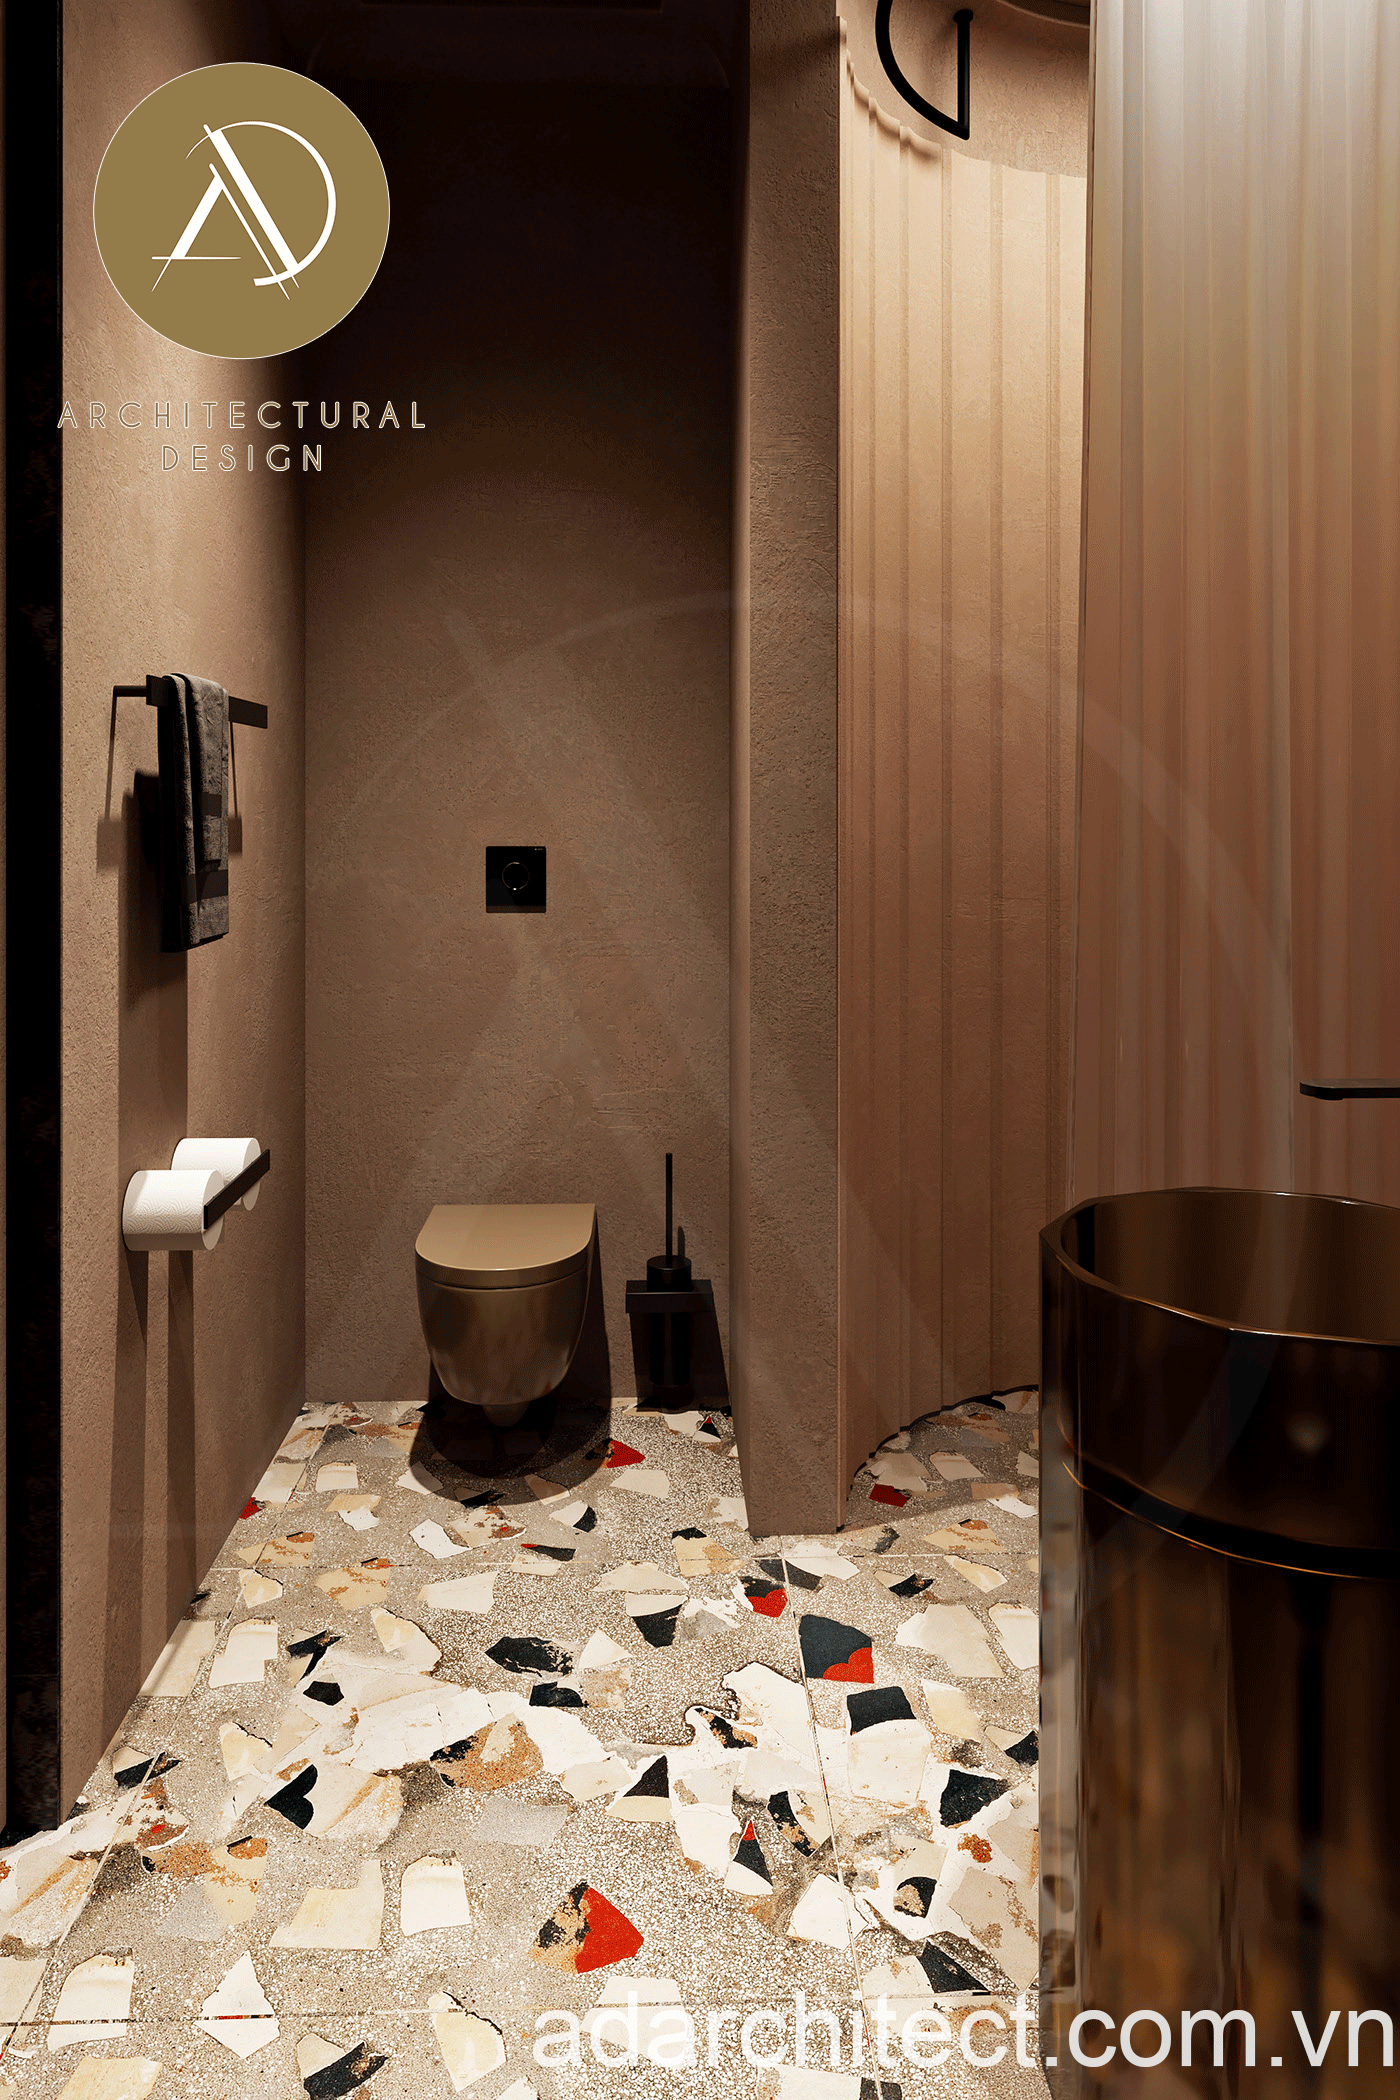 thiết kế toilet đẹp đơn giản cùng nội thất tráng gương nhỏ gọn sang trọng